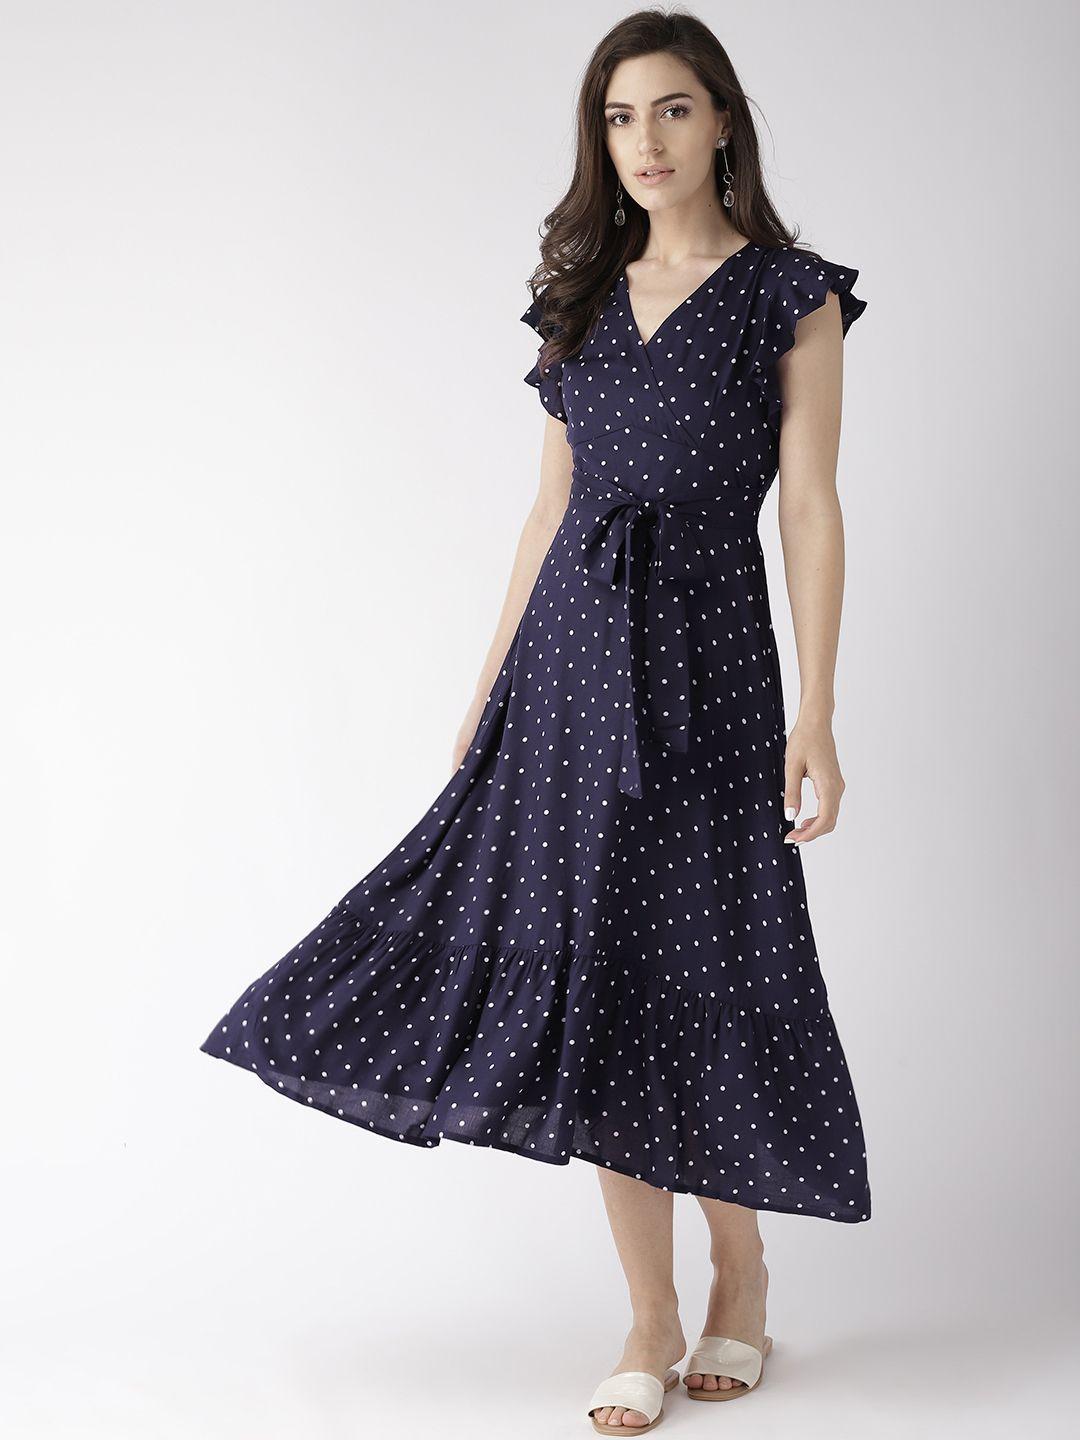 20dresses women navy blue & white polka dot print wrap dress